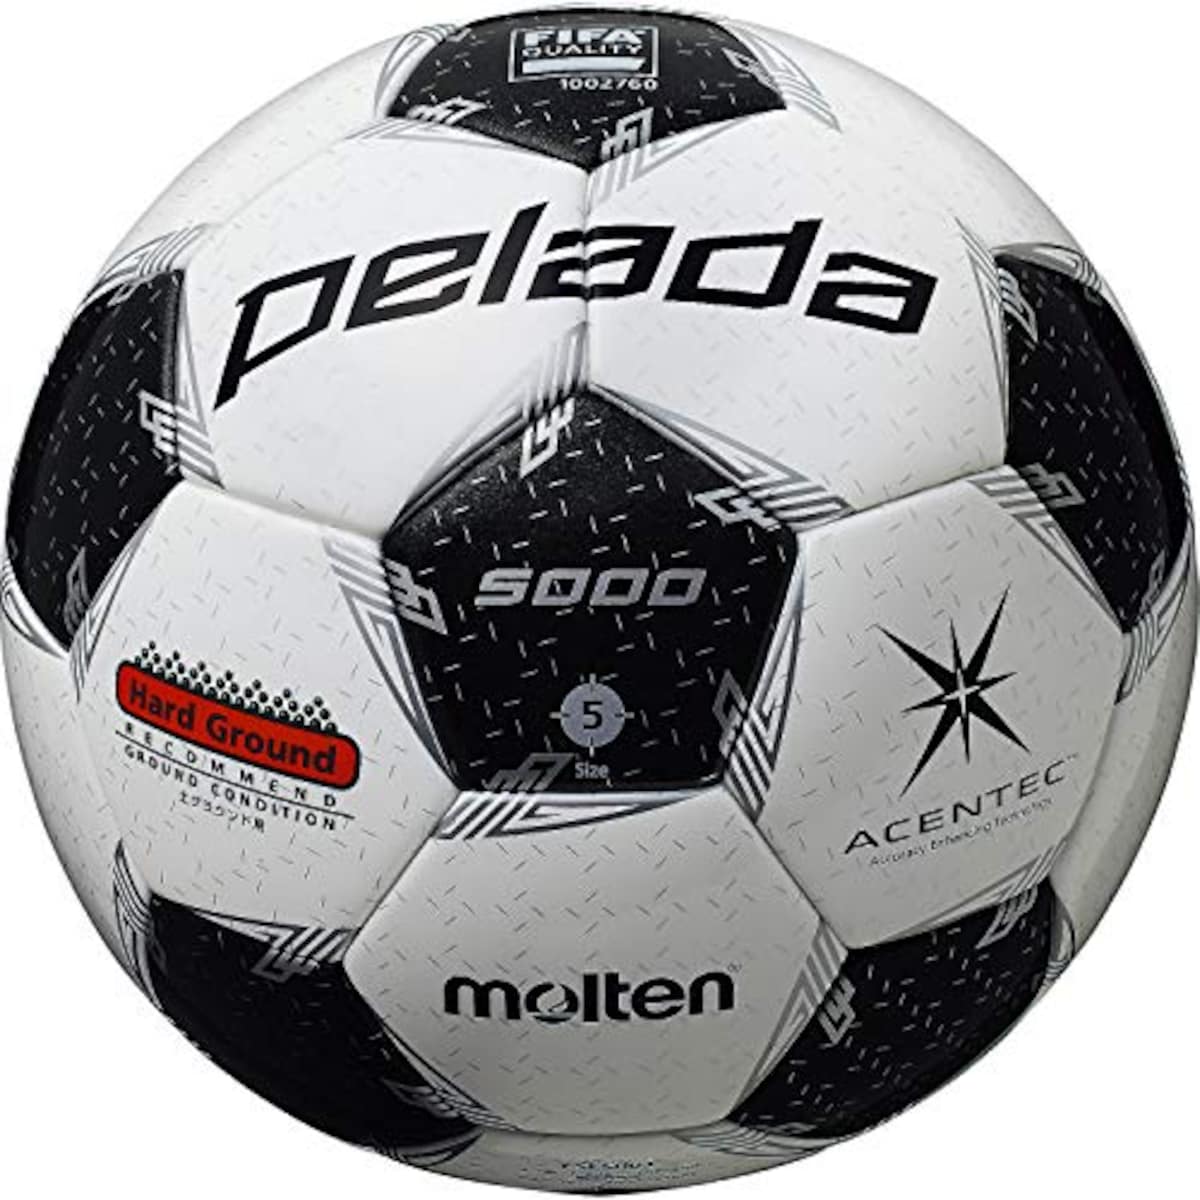 サッカーボール 5号球 ペレーダ5000【2020年モデル】 国際公認球画像